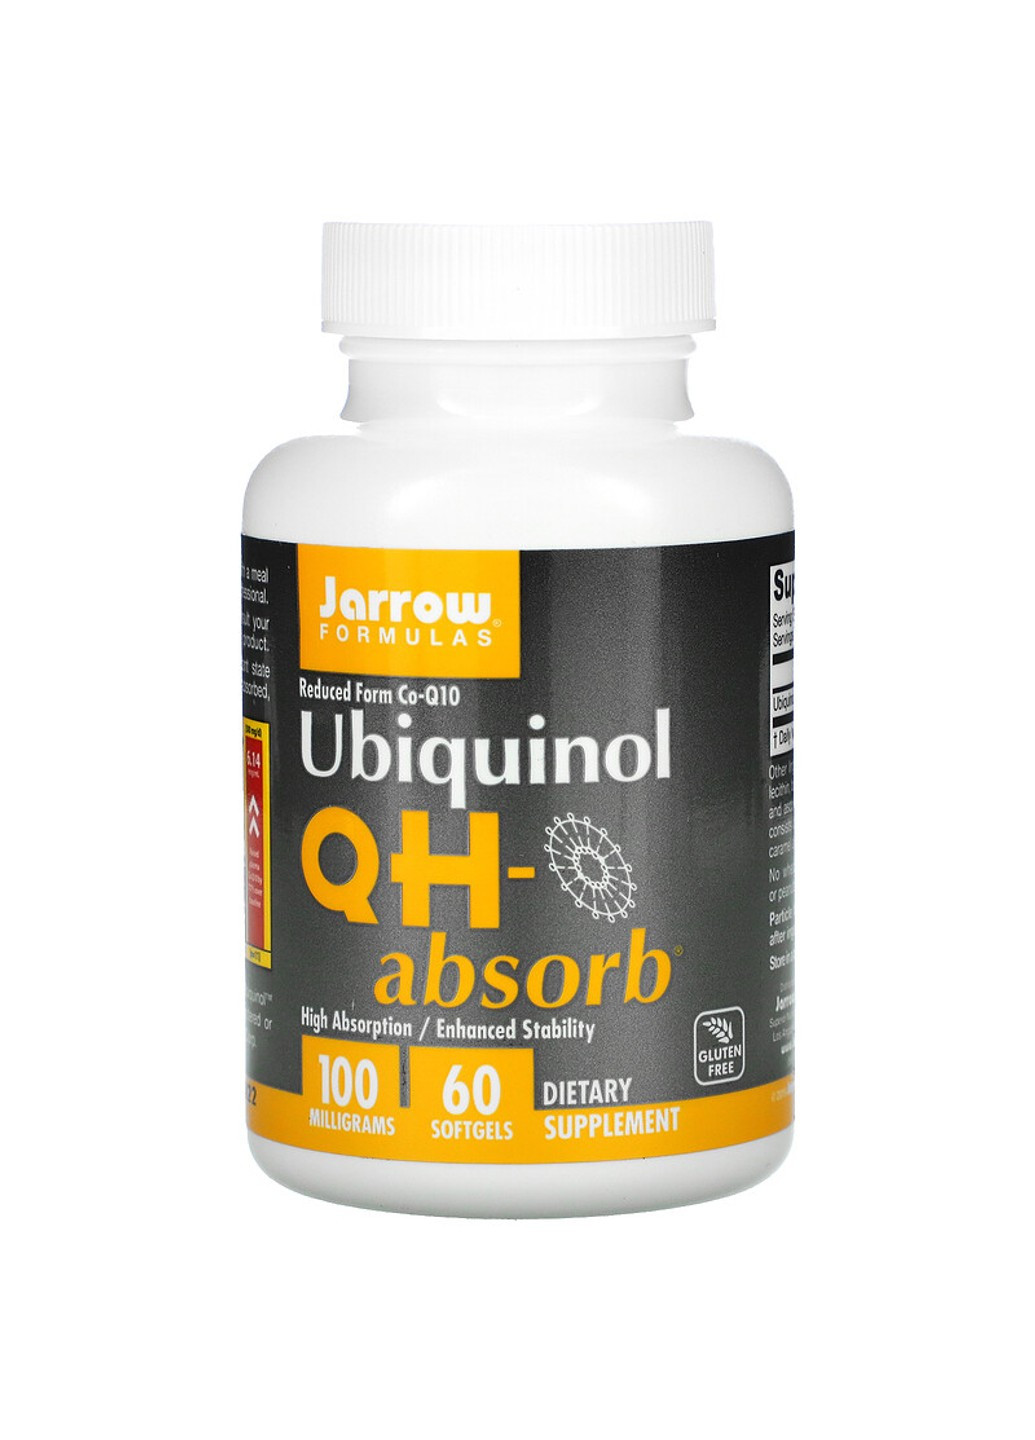 Убіхінол QH-Absorb, 100 мг, Ubiquinol, QH-Absorb,, 60 гелевих капсул Jarrow Formulas (255410063)